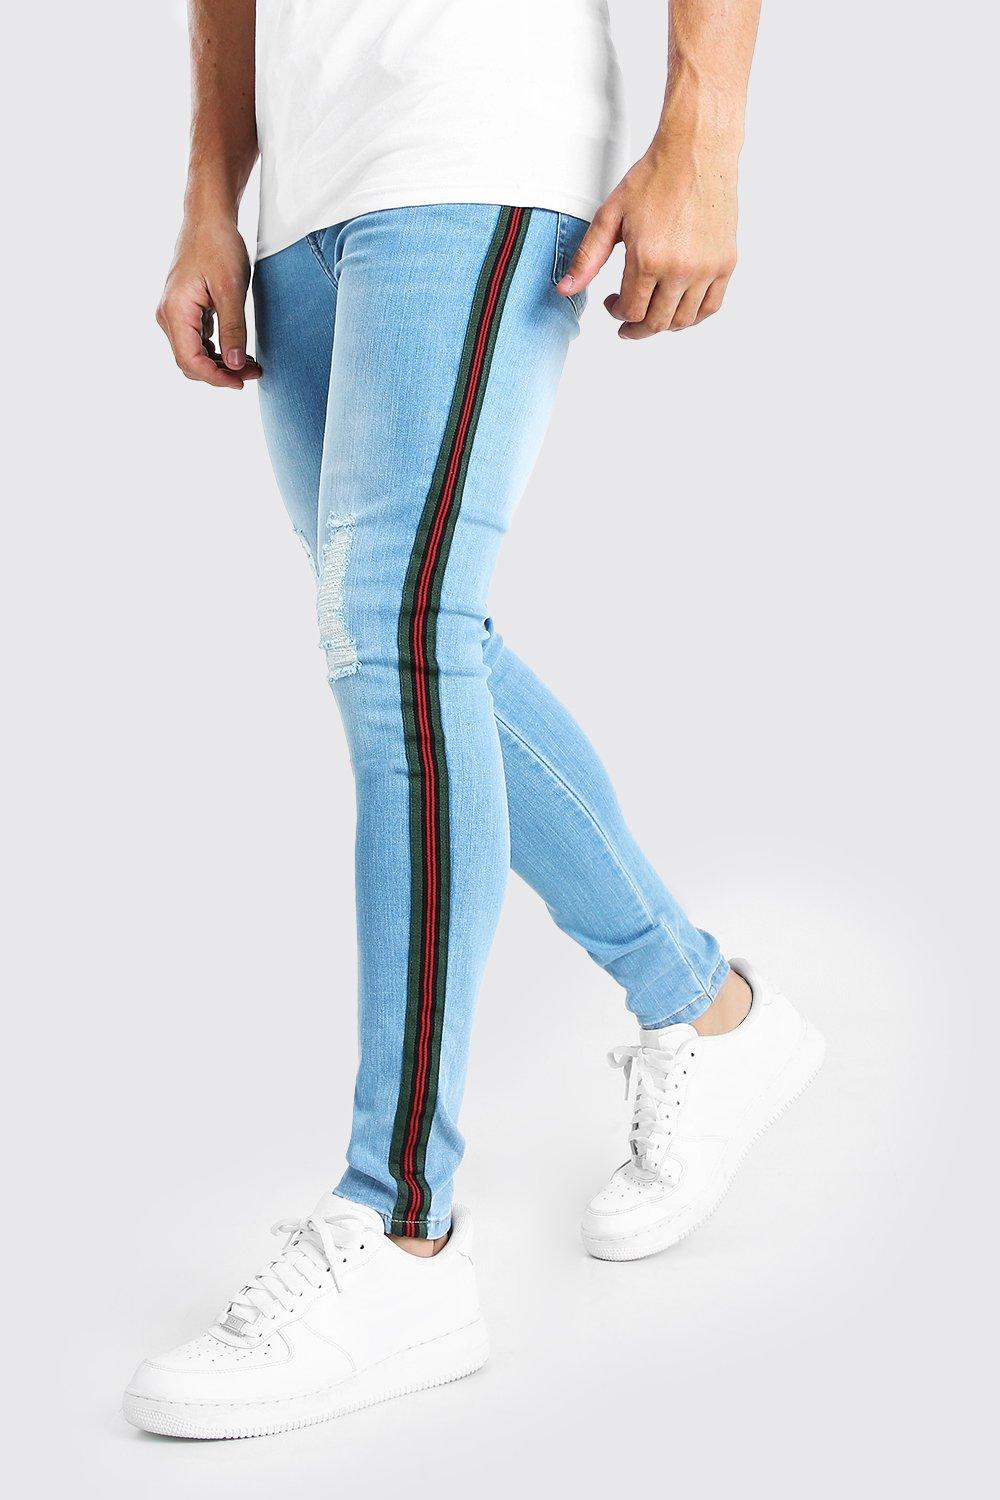 side tape jeans